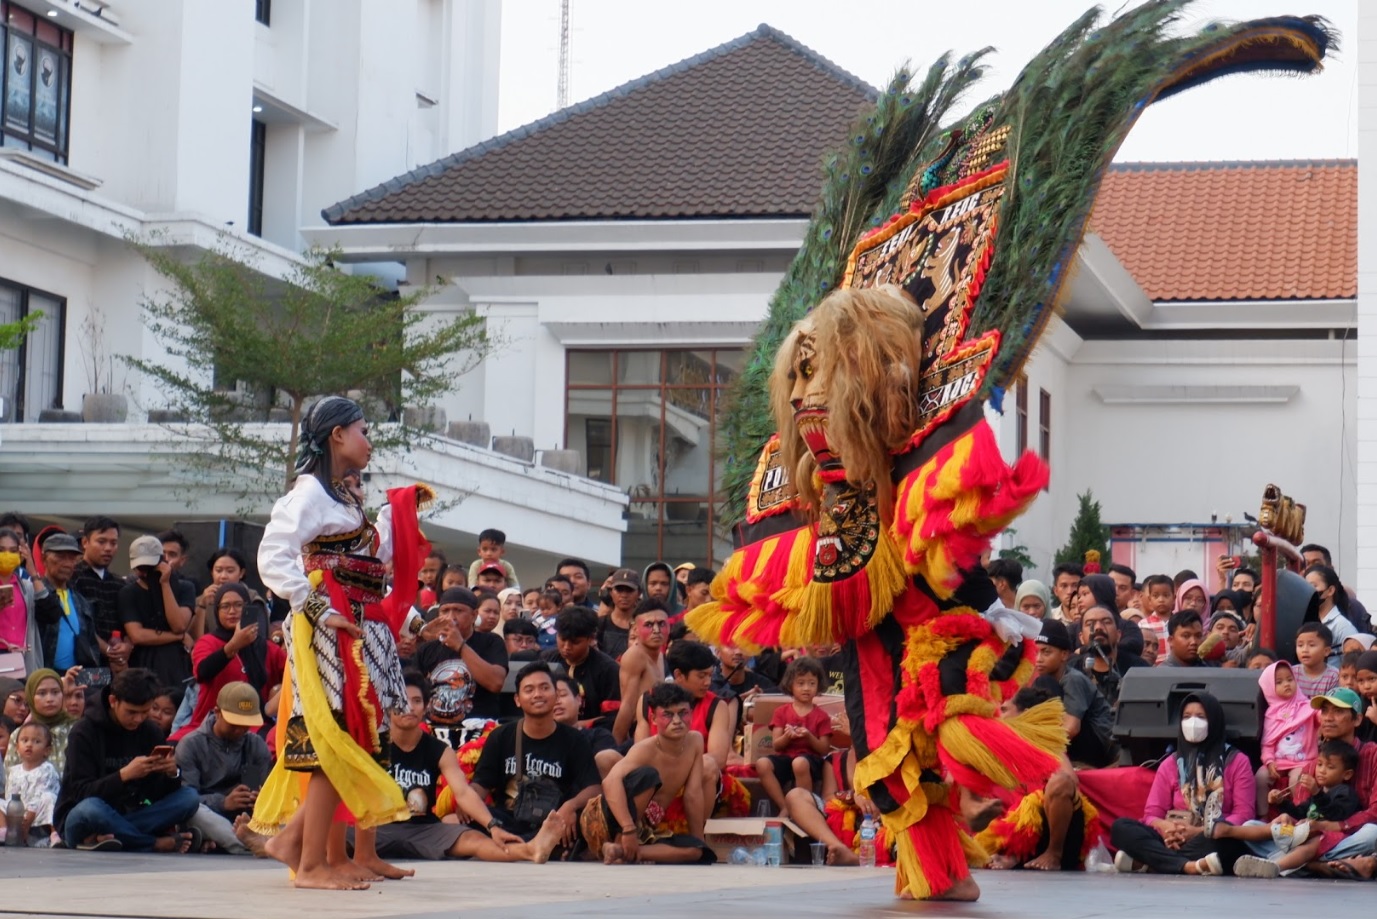 Pertunjukan Reog di Surabaya Art and Culture Festival Hibur Penonton, Kelompok Seni Ingin Lebih Banyak Yang Nanggap  